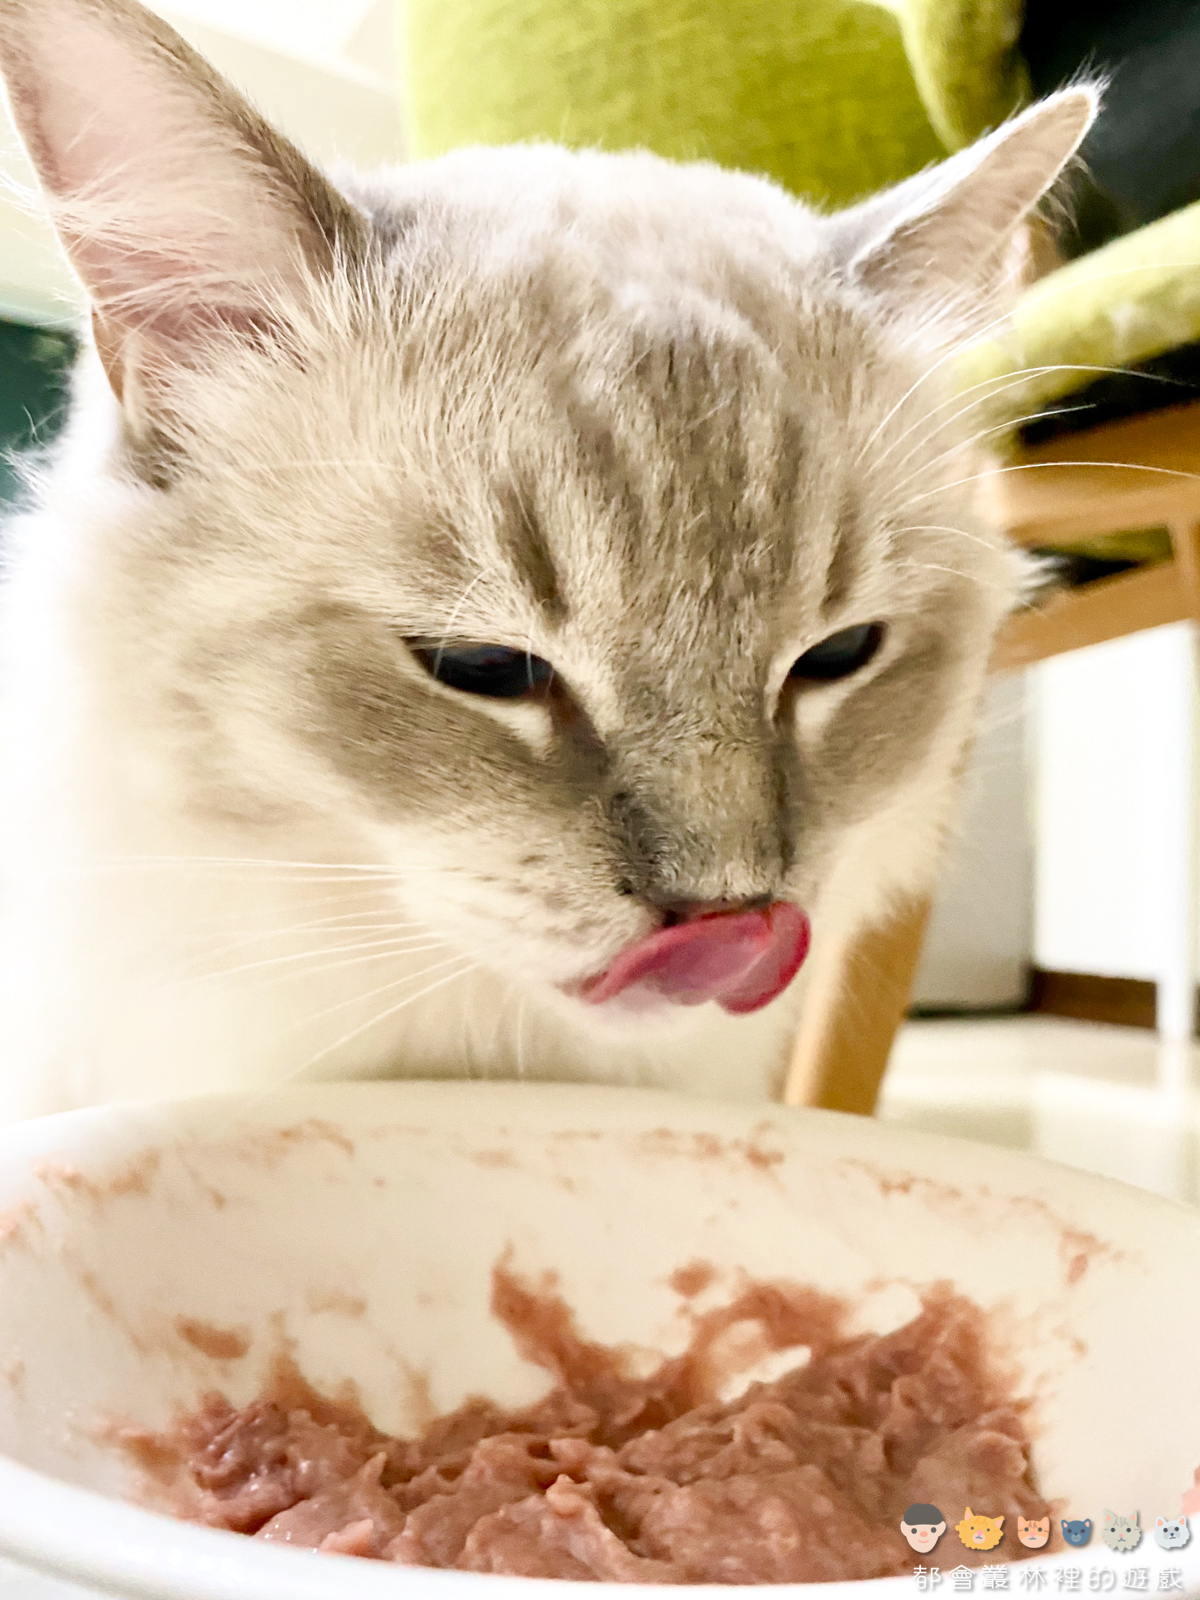 【貓咪飲食】我們家的貓都吃菲力牛排 緬因貓 豹貓 布偶貓 俄羅斯藍貓